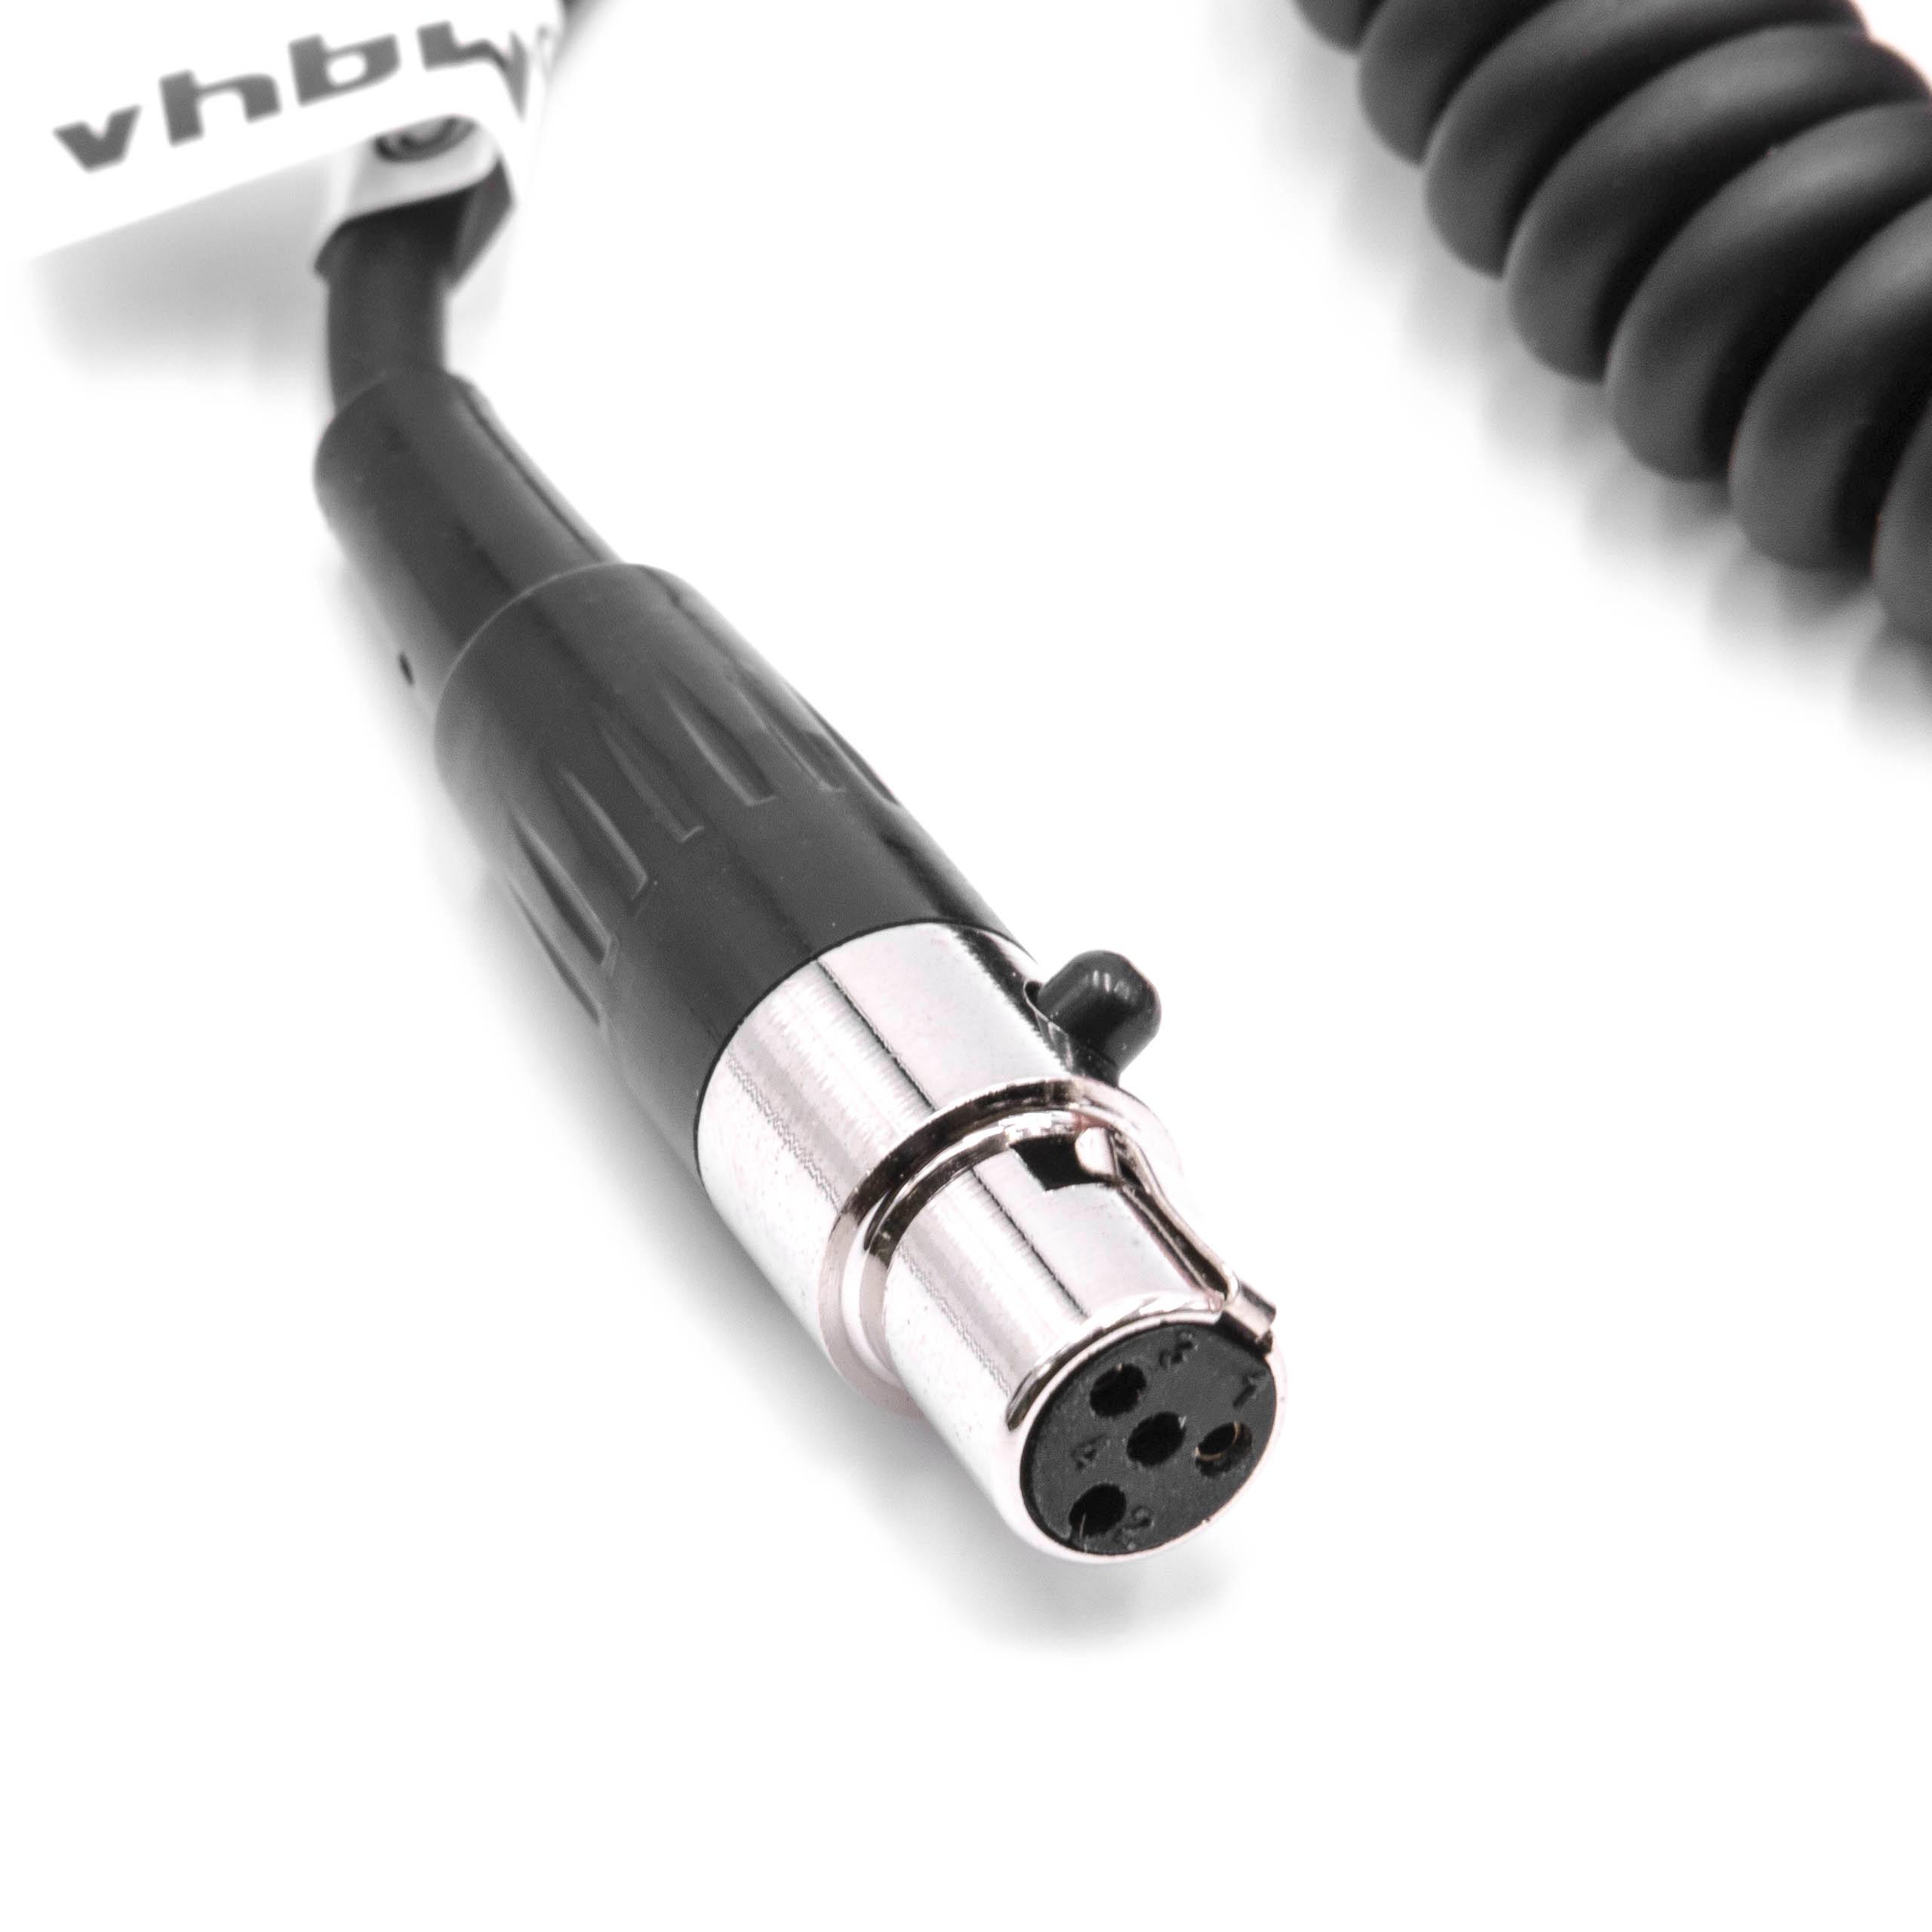 vhbw Cable de alimentación D-Tap a Mini XLR (m) 4 pin cámaras, videocámaras - cable en espiral negro